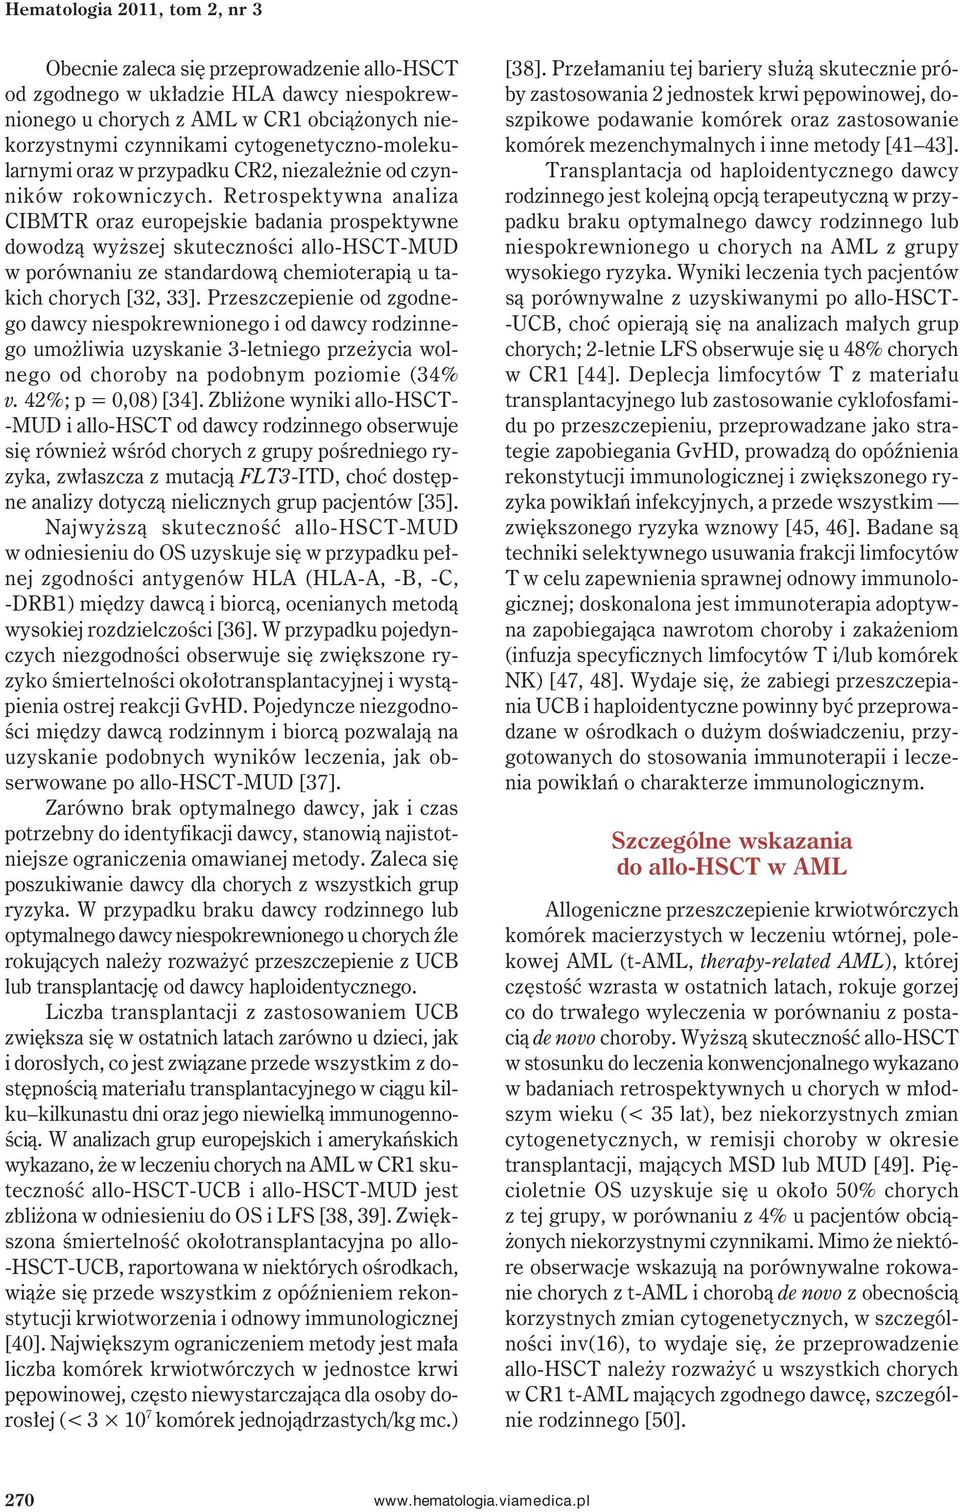 Retrospektywna analiza CIBMTR oraz europejskie badania prospektywne dowodzą wyższej skuteczności allo-hsct-mud w porównaniu ze standardową chemioterapią u takich chorych [32, 33].